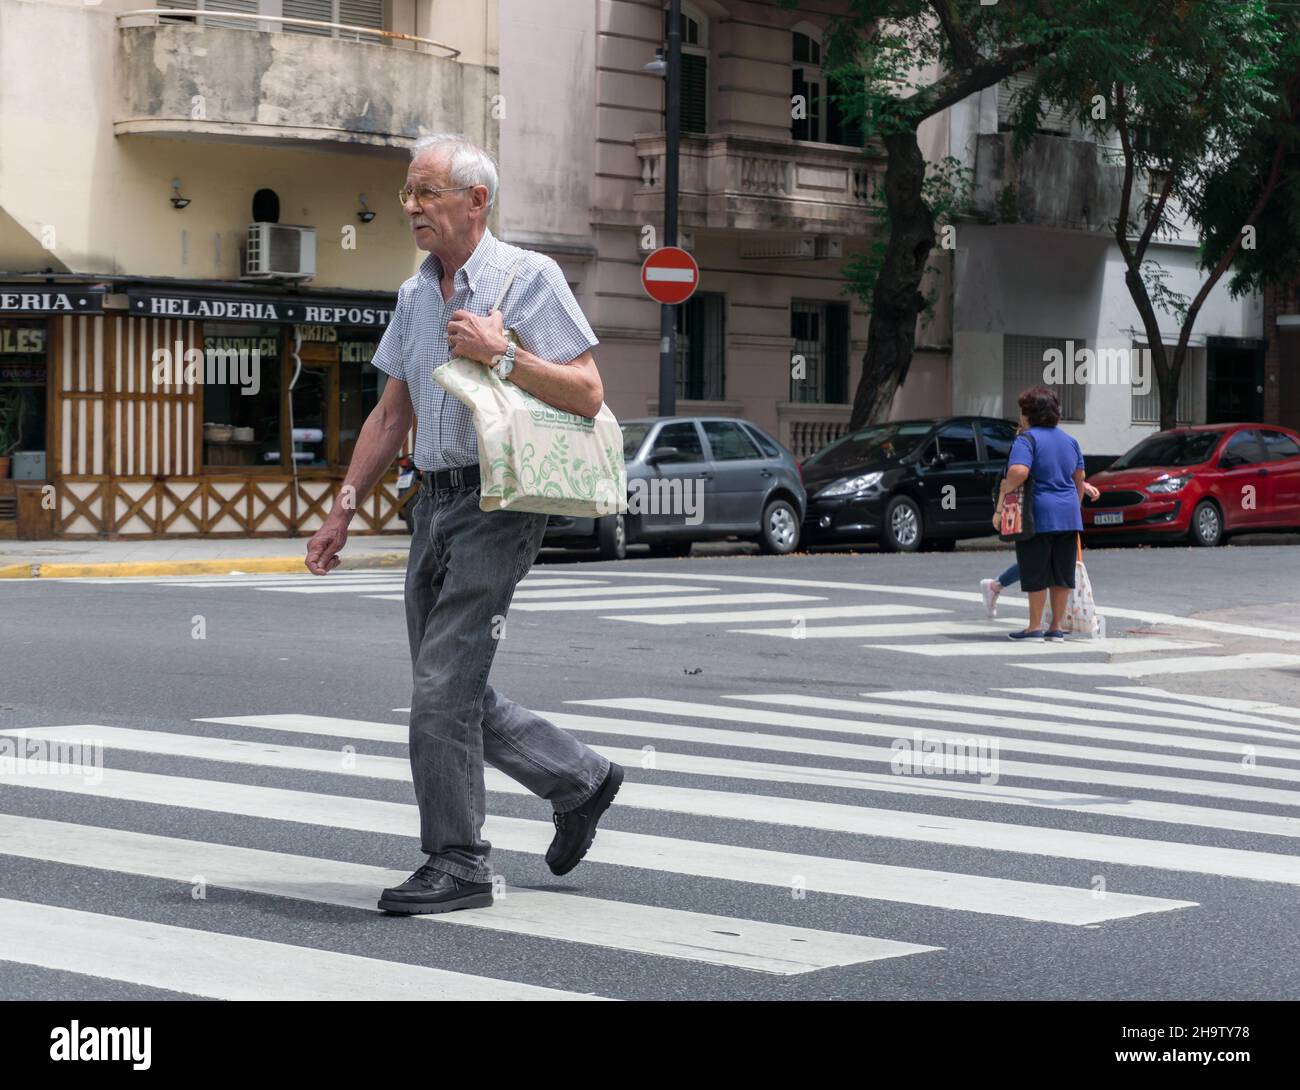 Buenos Aires, Argentinien. 22. November 2019: Ein alter Mann geht mit einer Einkaufstasche in Buenos Aires über die Zebrakreuzung Stockfoto